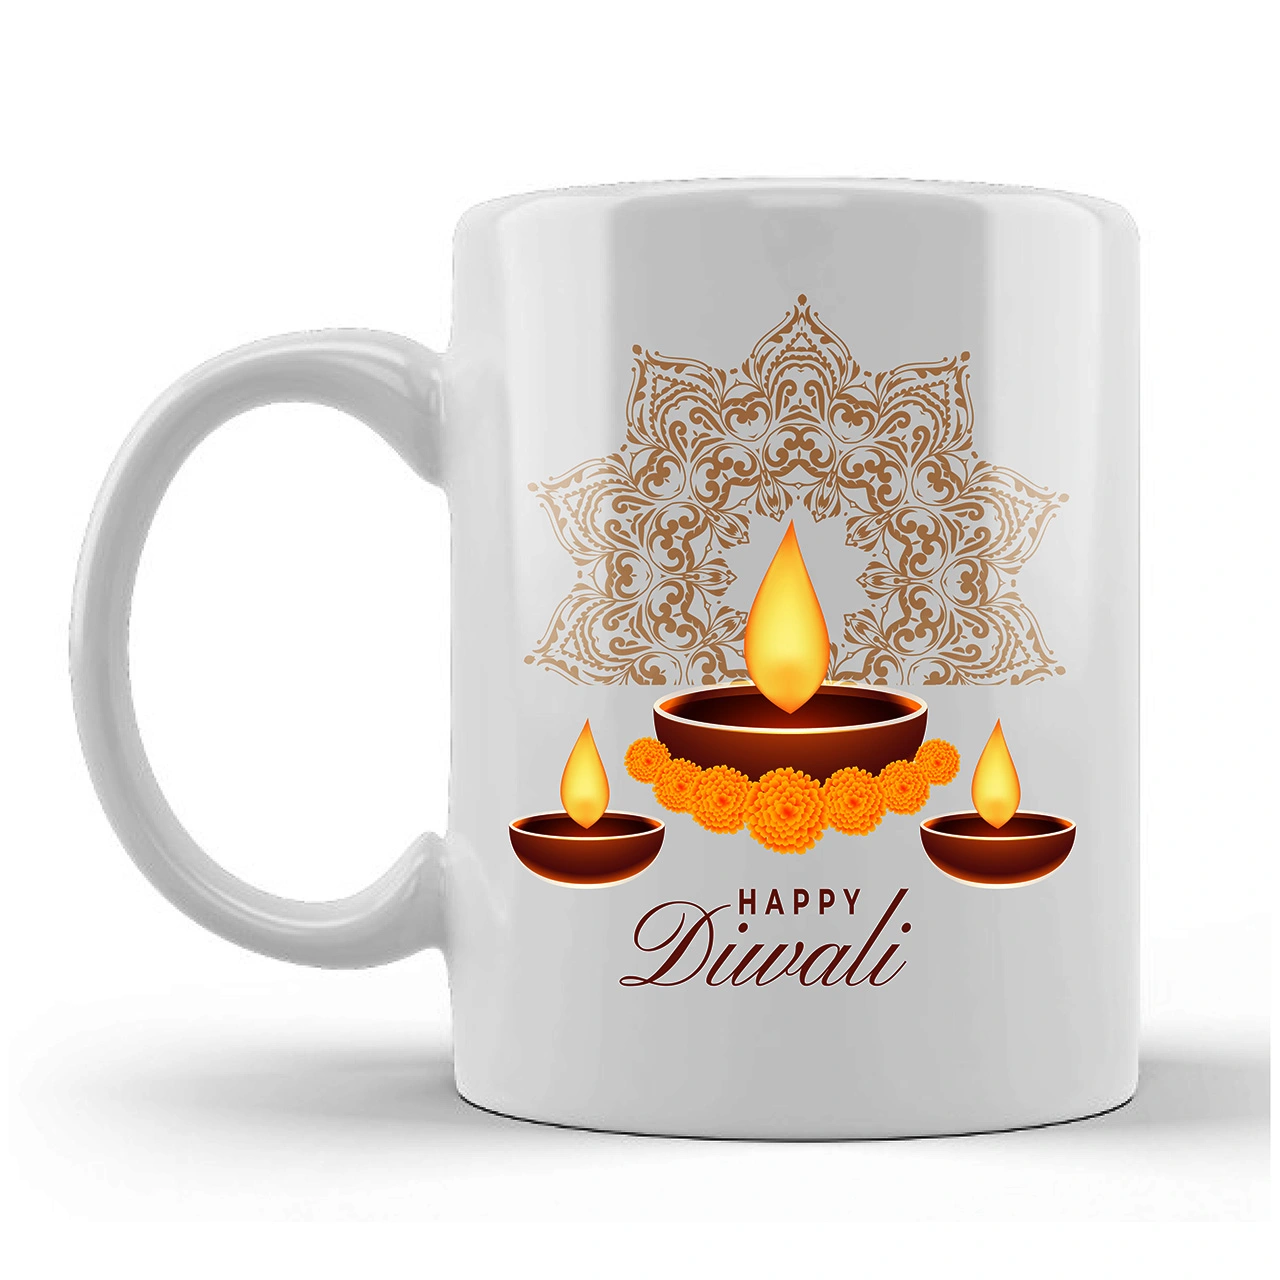 Happy Diwali Printed Ceramic Mug Gifts for | Diwali Gifts, Diwali Gift Items, Diwali Gifts for Friends, Diwali Gifts for Friends and Family, Gifts for Diwali (Design 4)